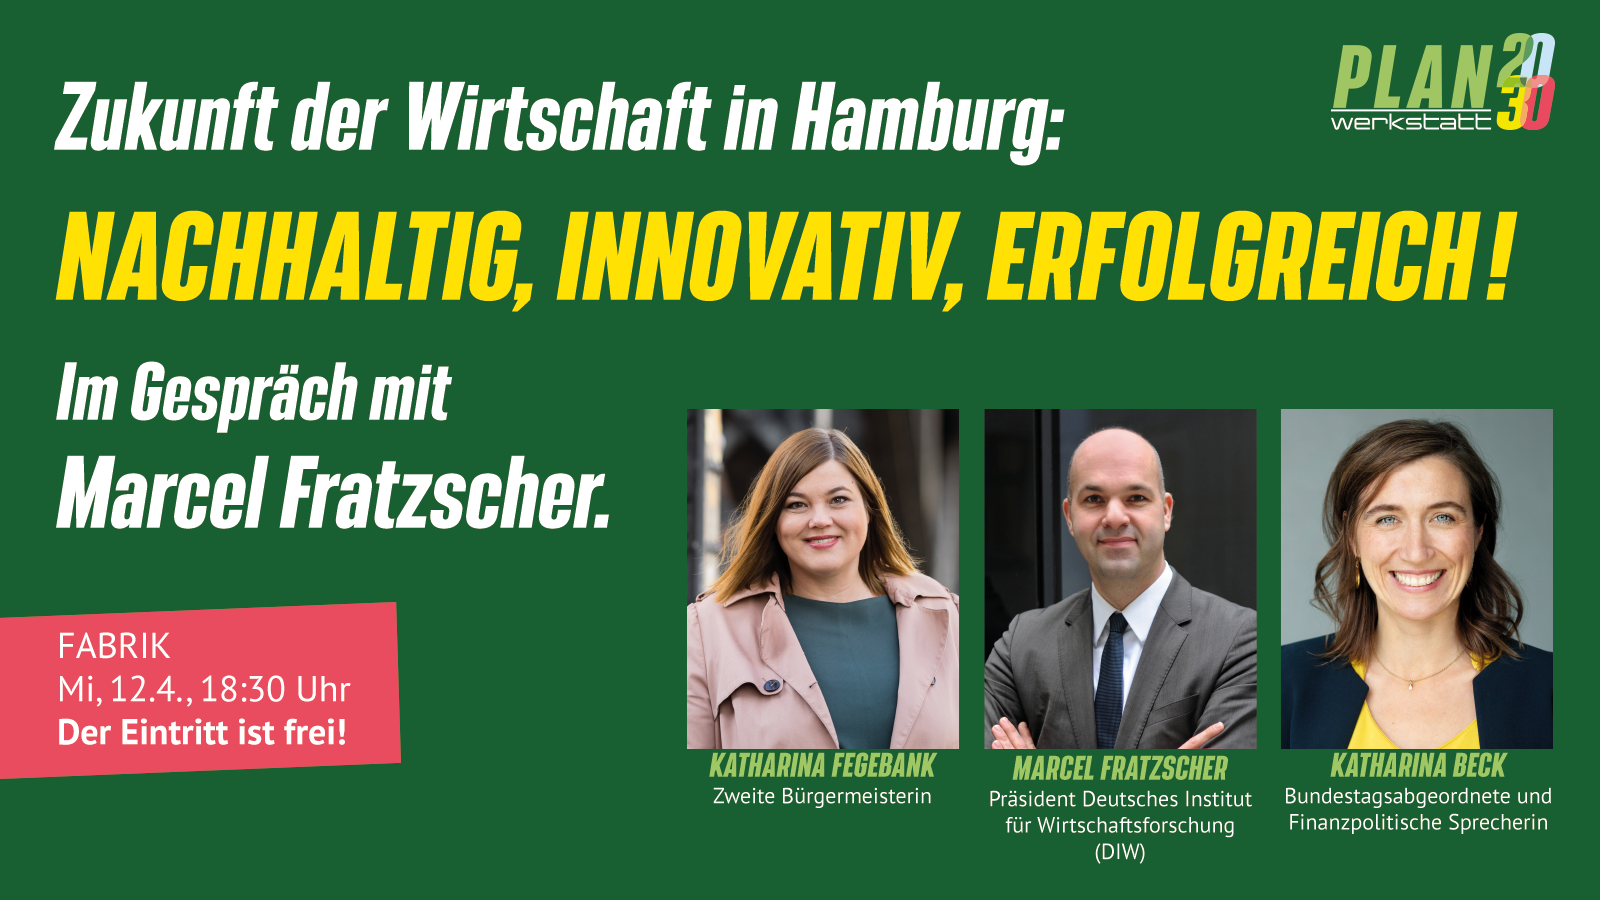 Zukunft der Wirtschaft in Hamburg: Nachhaltig, innovativ, erfolgreich! Ein Gespräch mit Marcel Fratzscher, Katharina Fegebank und Katharina Beck